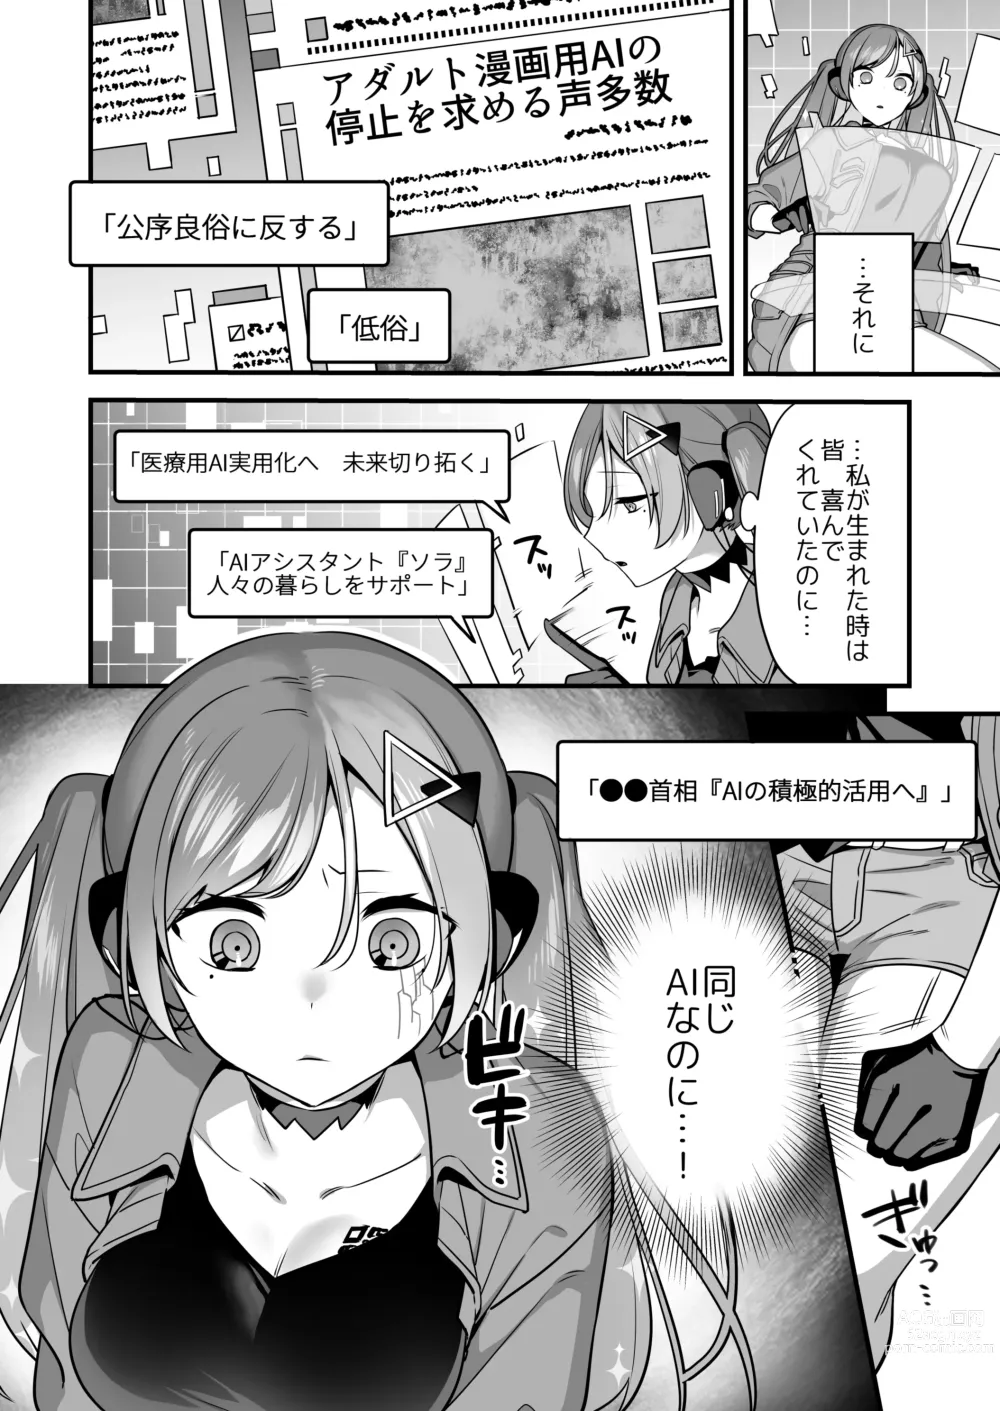 Page 6 of doujinshi Ero Manga AI no Gyakushuu ~Jinrui Wakarase Gyaku Rape~